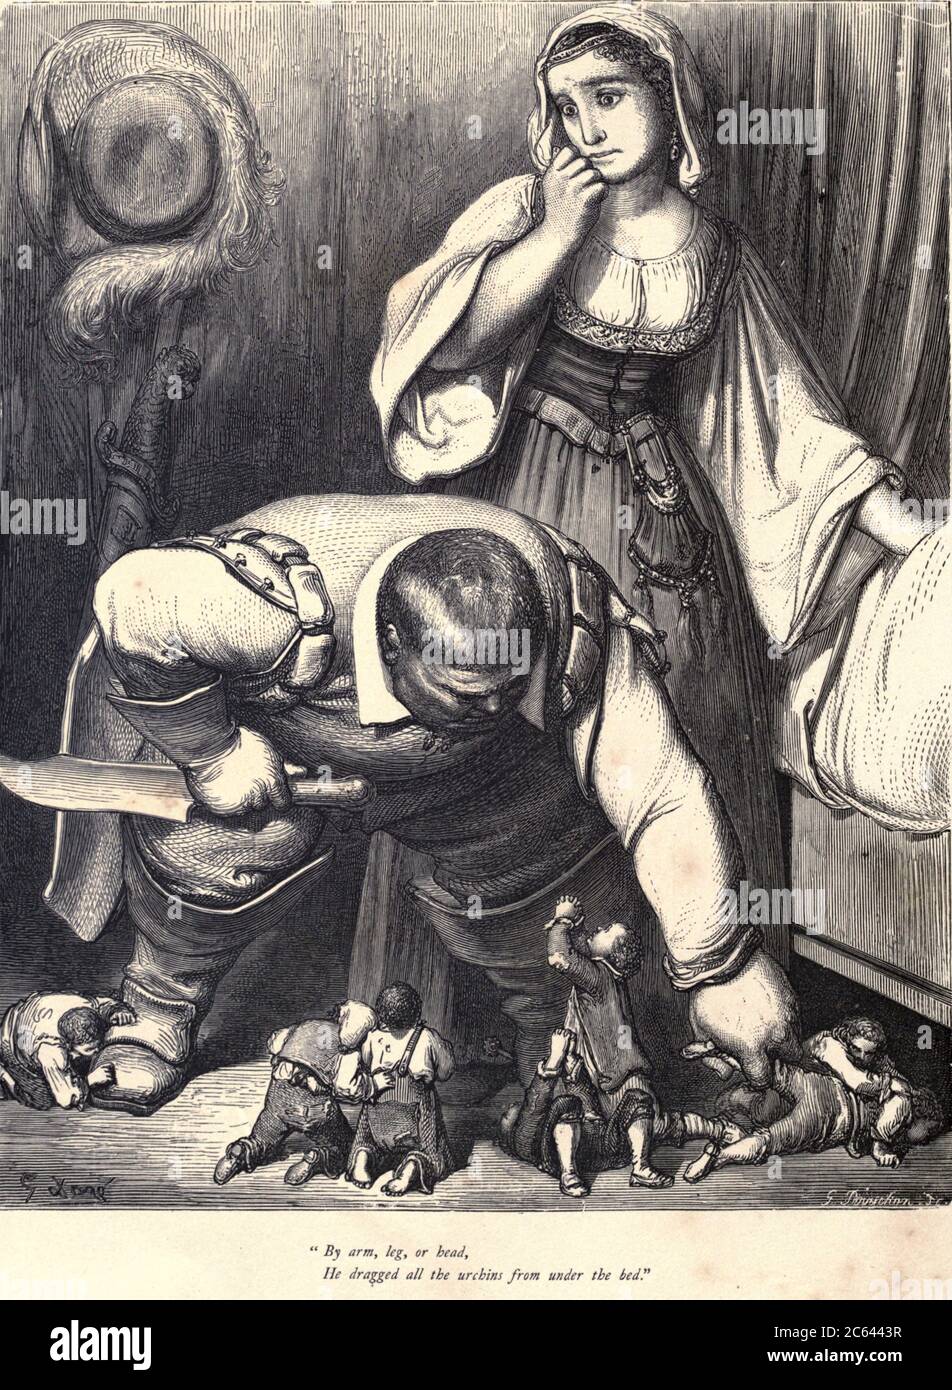 Per braccio, gamba o testa, trascinò tutti i ricci da sotto il letto" Illustrazione da ‘Hop o’ My Thumb’ di Paul Gustave Dore. Hop-o'-My-Thumb (Hop-on-My-Thumb), o Hop o' My Thumb, noto anche come Little Thumbling, Little Thumb, o Little Poucet è una delle otto favole pubblicate da Charles Perrault in Histoires ou Contes du temps passé (1697), dove il piccolo ragazzo sconfigge l'orco. Illustrazione di Gustave Dore dal regno fata del libro. Una raccolta dei vecchi racconti preferiti. Illustrato dalla matita di Gustave Dore di Tom Hood, (1835-1874); Gustave Doré, (1832-1883) pubblicato a Londra Foto Stock